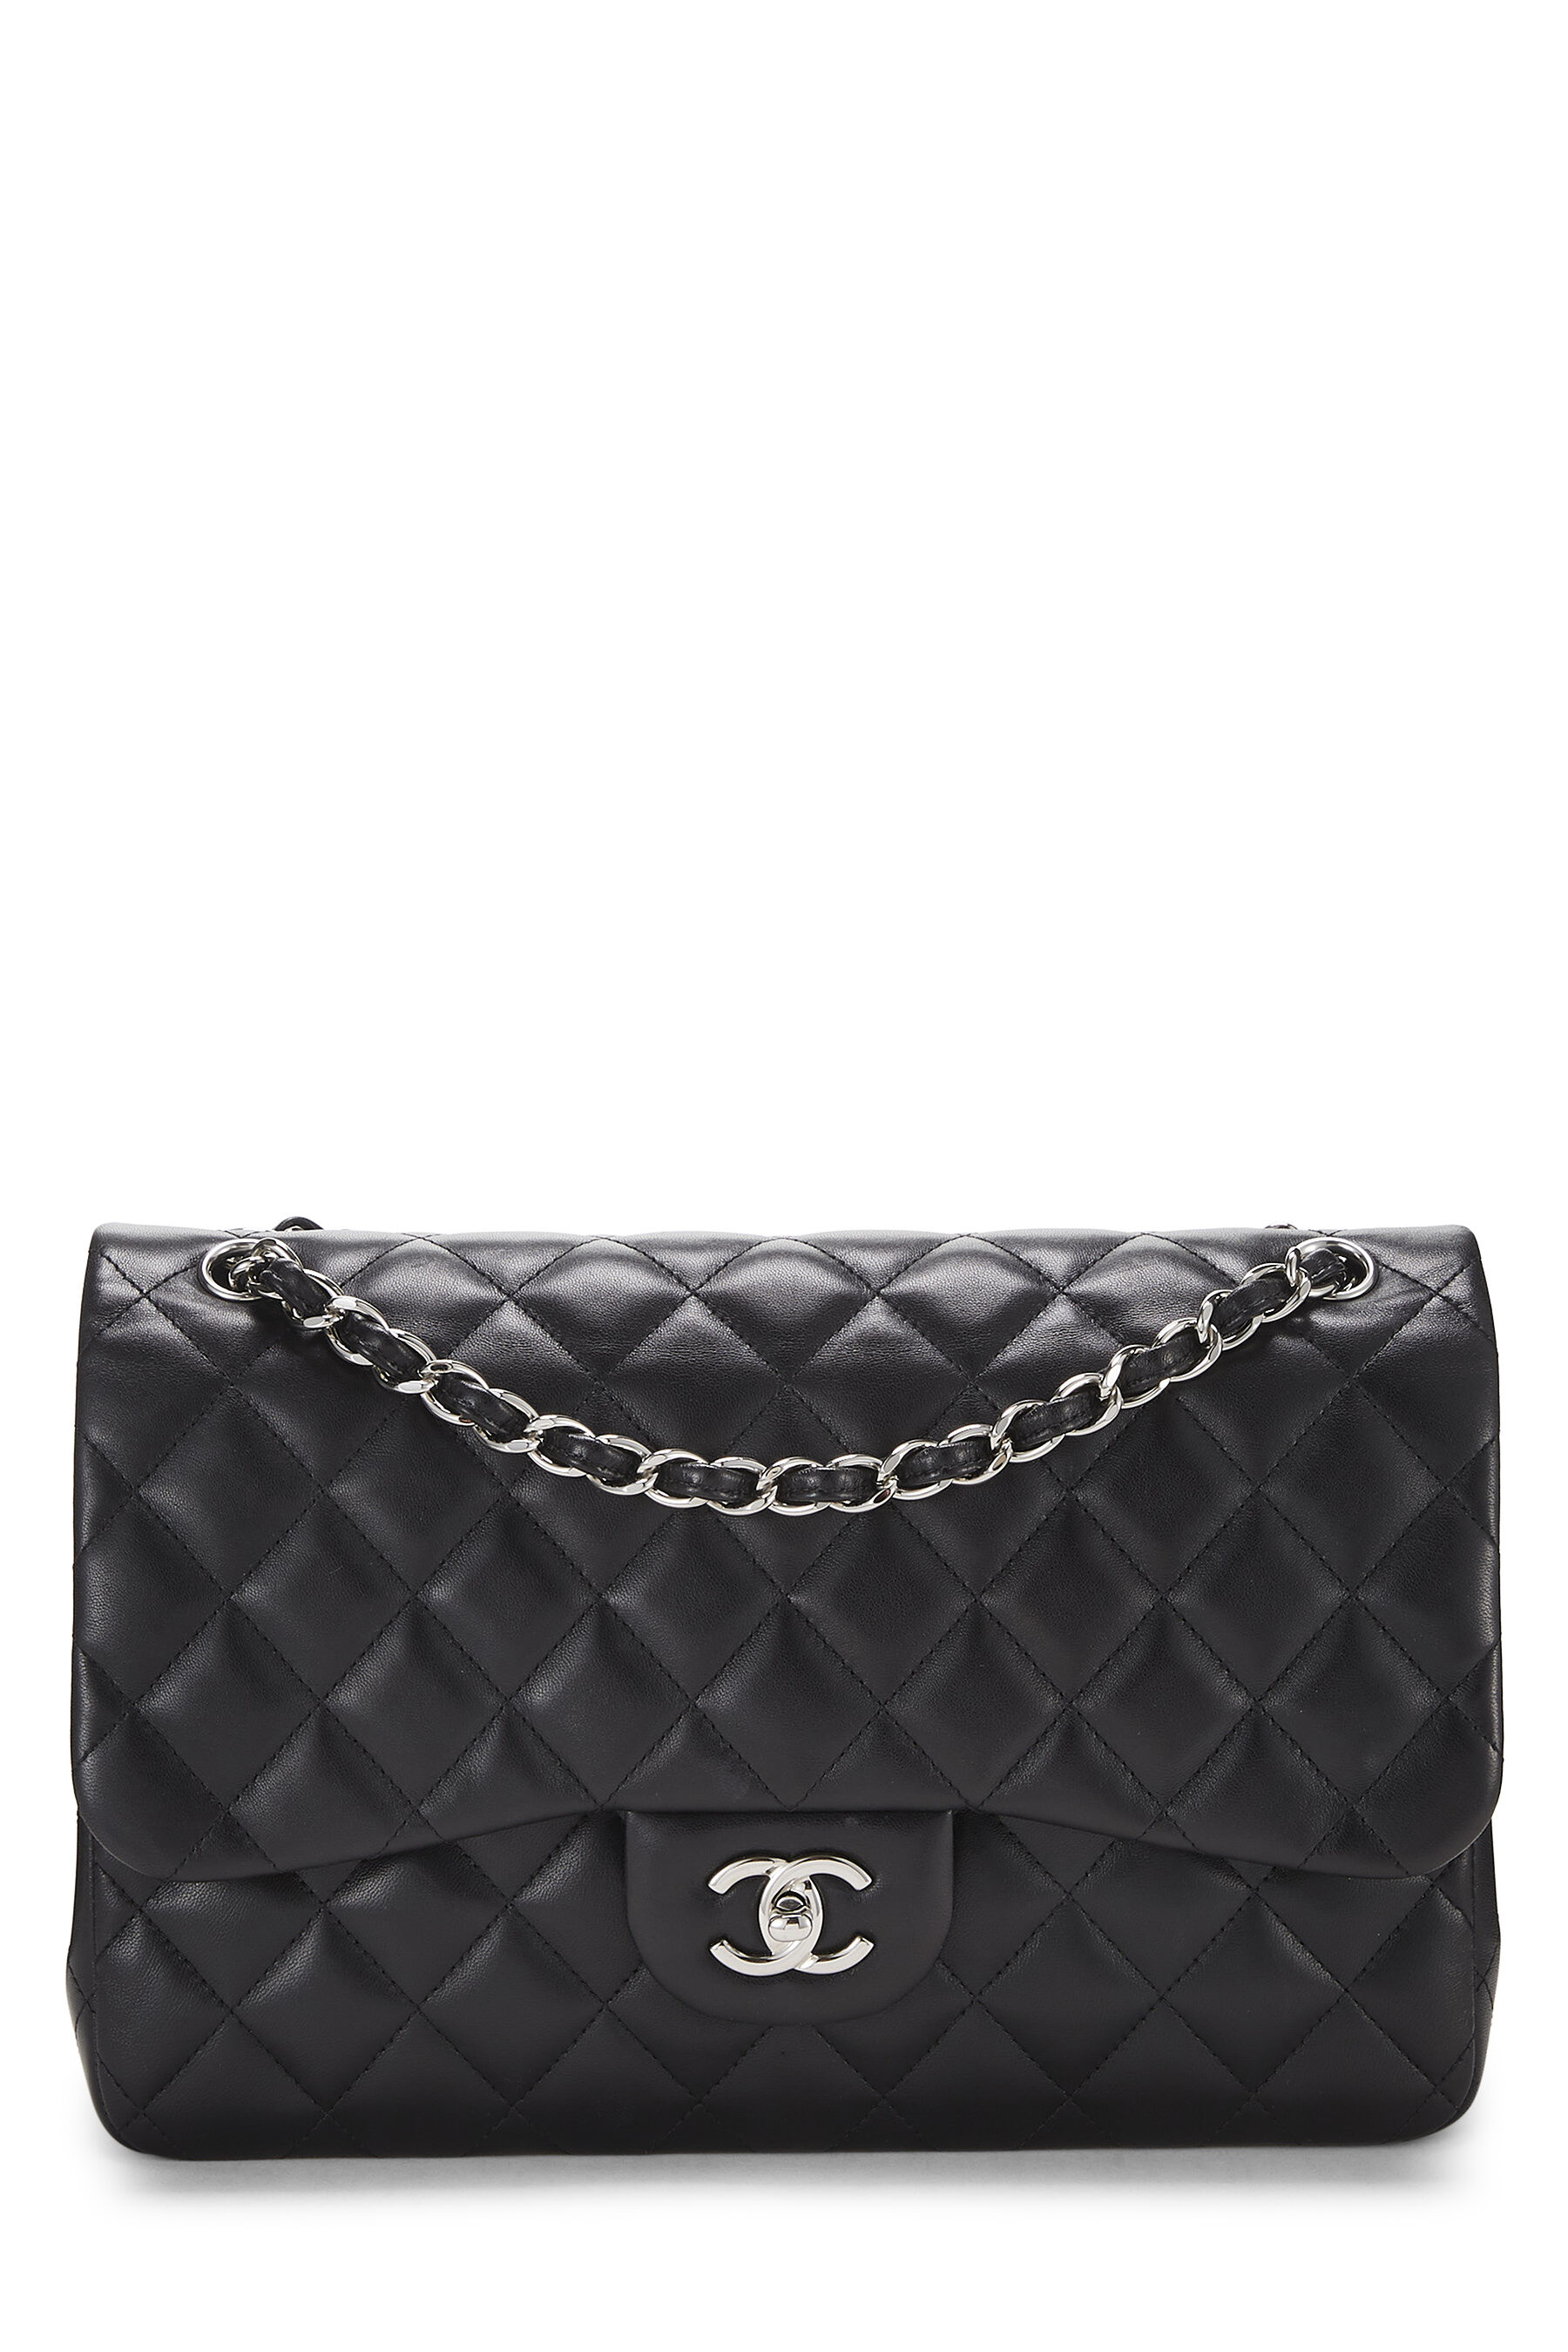 Authentic Chanel Classic Black Single Flap Caviar Leather Maxi Chain S –  Paris Station Shop